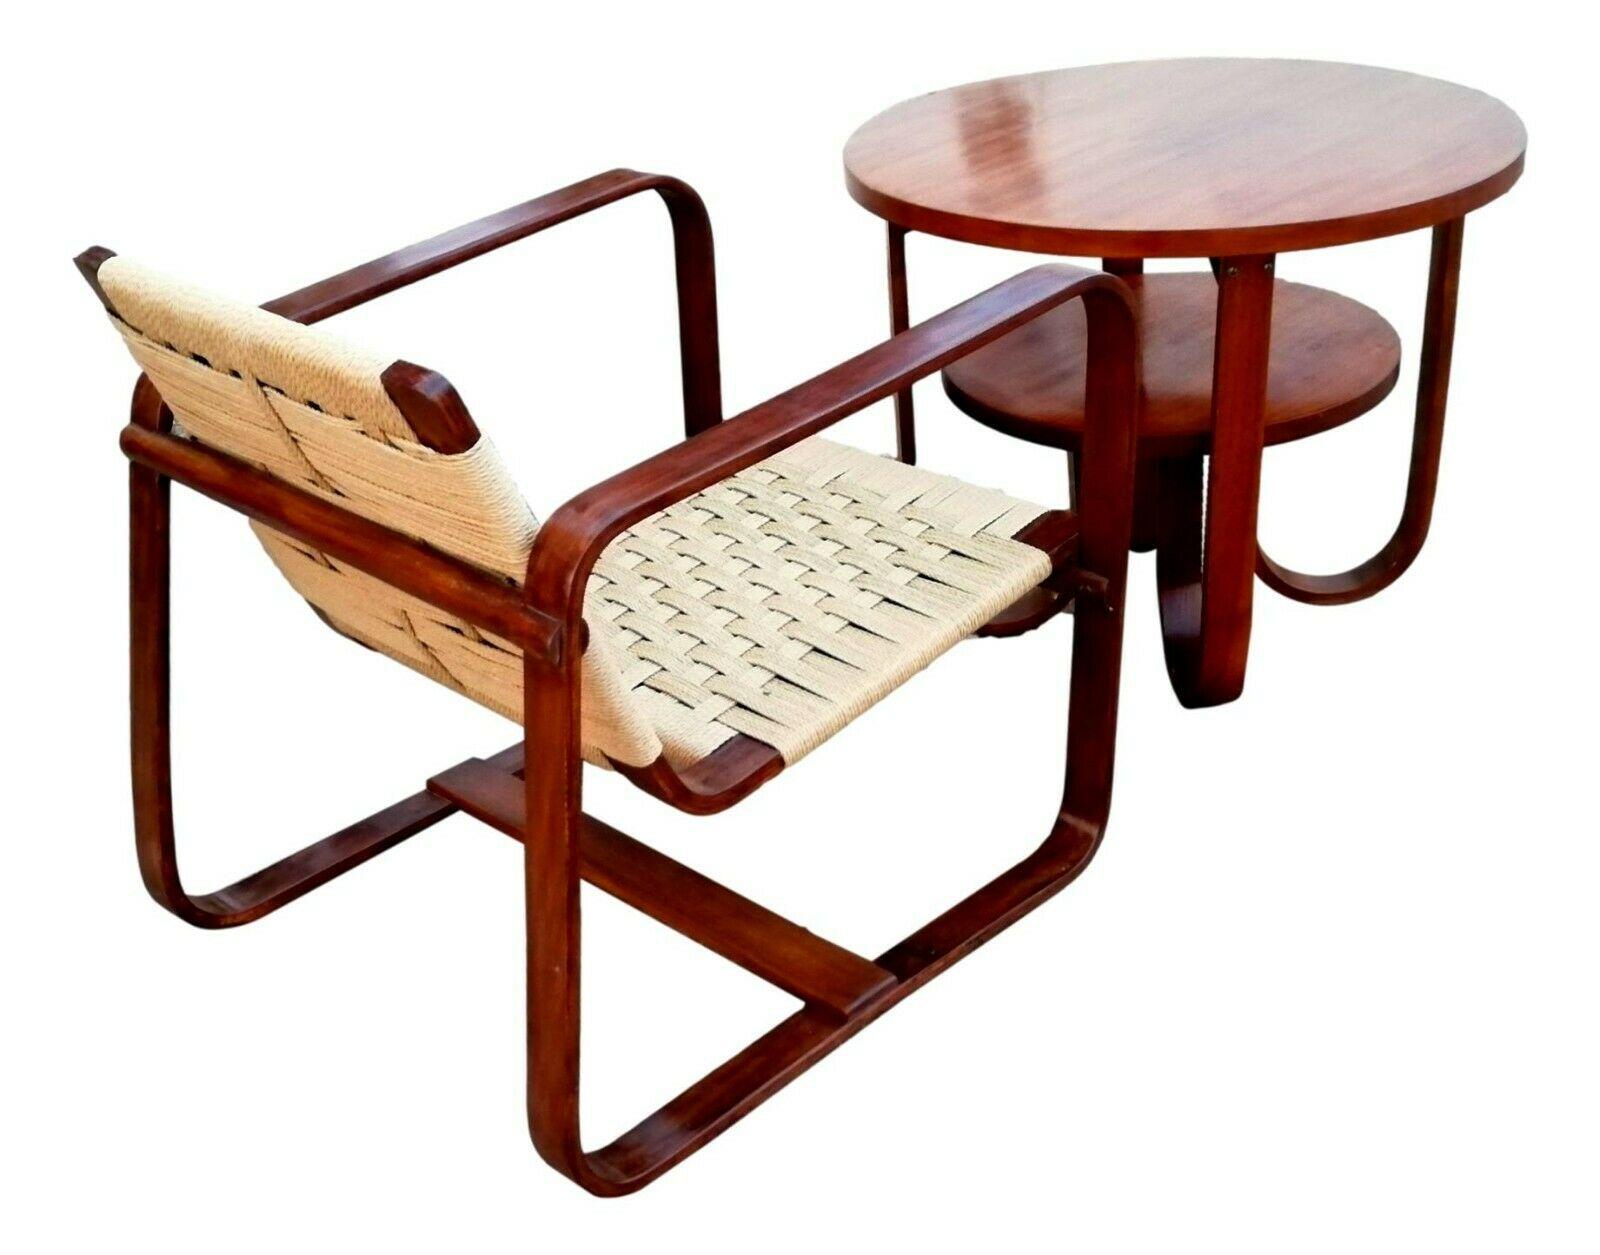 Seltene Garnitur bestehend aus einem Sessel und einem kleinen Tisch, die Mitte der 40er Jahre von Giuseppe Pagano Pogatschnig für Gino Maggioni für die Bocconi Universität in Mailand entworfen wurde.

struktur aus gebogenem und massivem